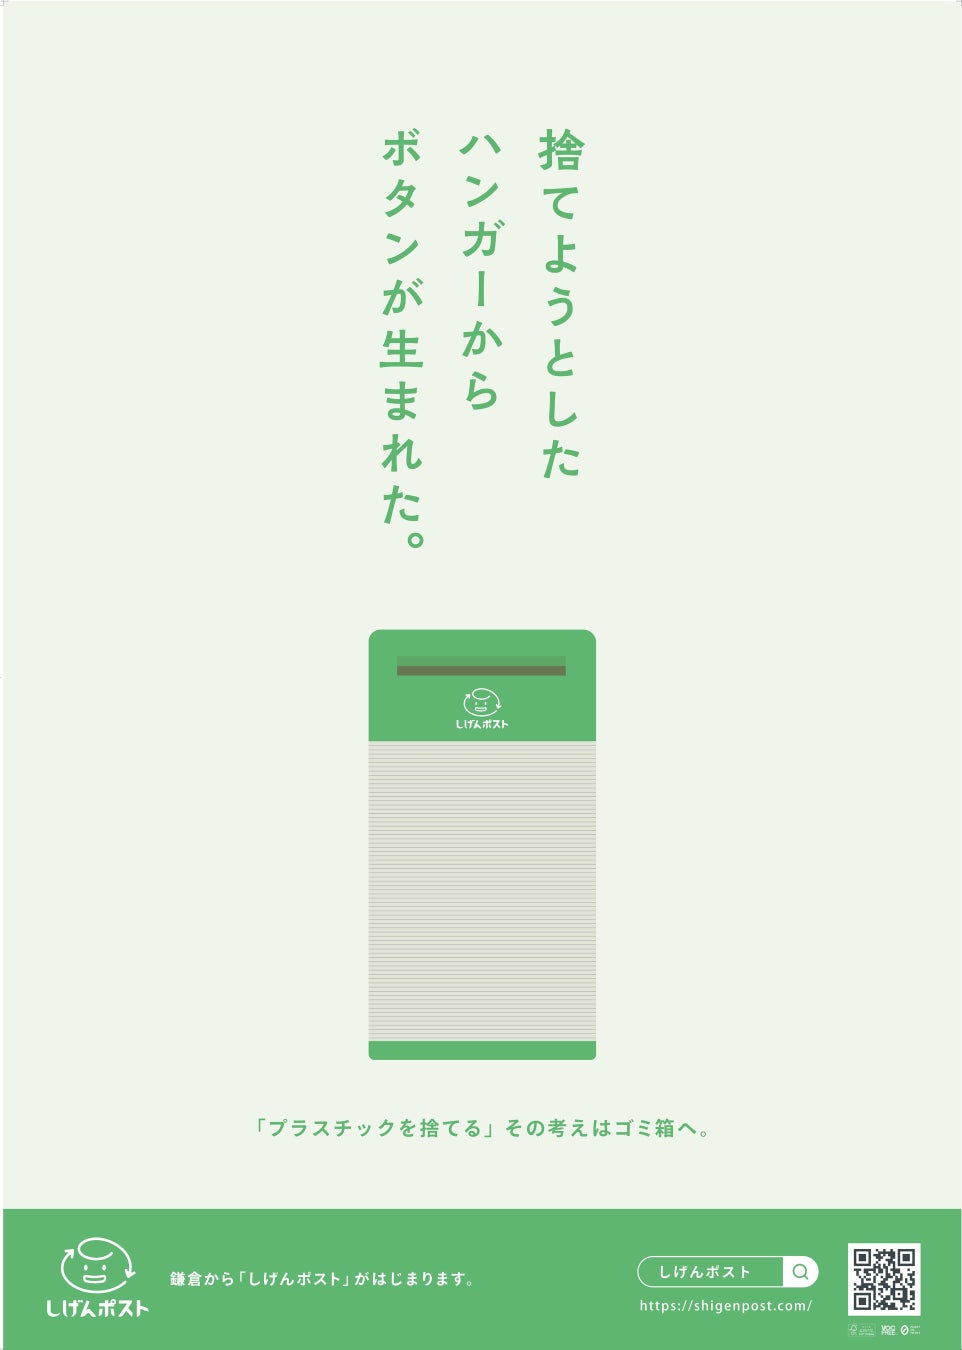 官民産学連携でプラごみを新しい資源へと循環する取り組み「鎌倉リサイクリエーション　プラス」開始「しげんポスト」を7月4日より鎌倉市内に設置のサブ画像8